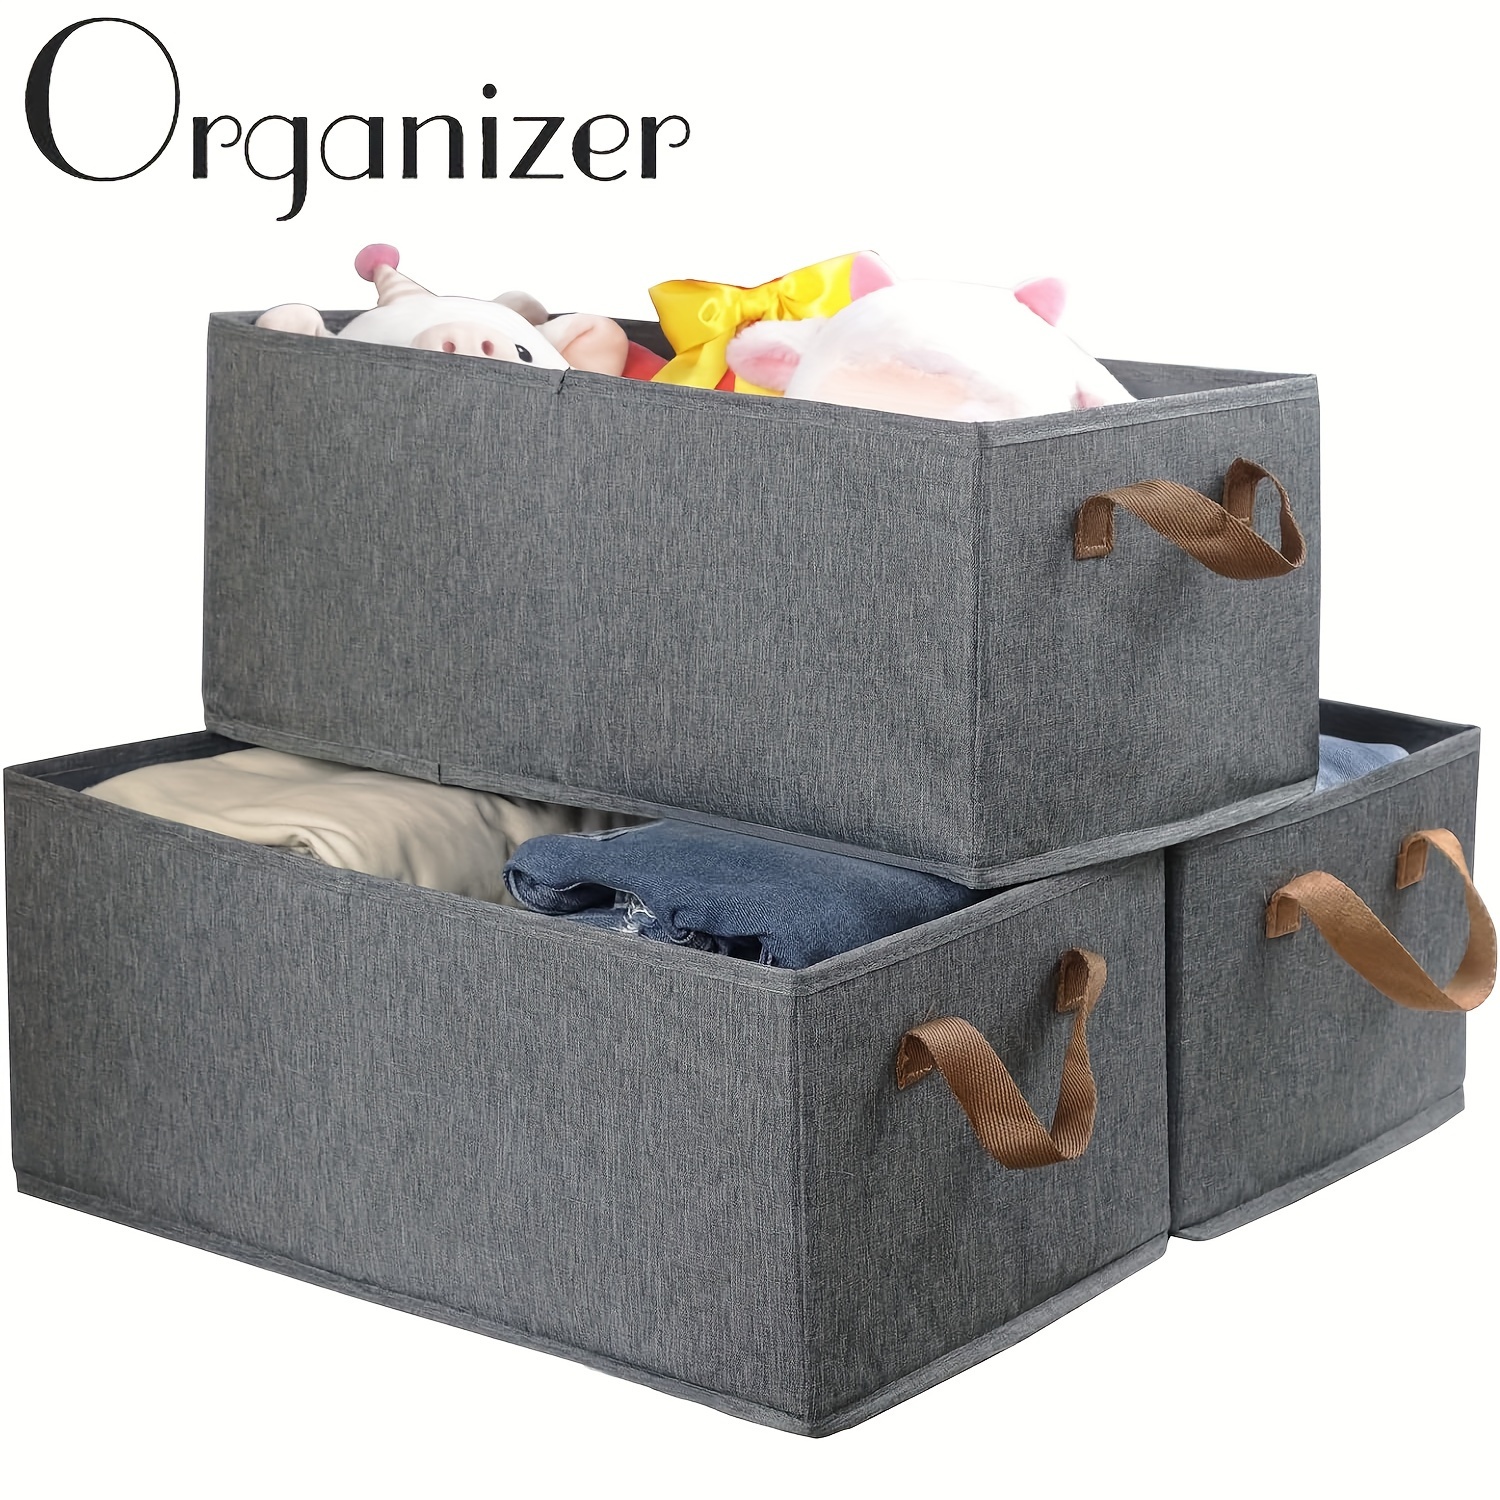 Homsorout Closet Storage Bins, Trapezoid Storage Baskets with Handle, Closet Organizer Bins for Closet Organization, Storage Baskets for Organizing